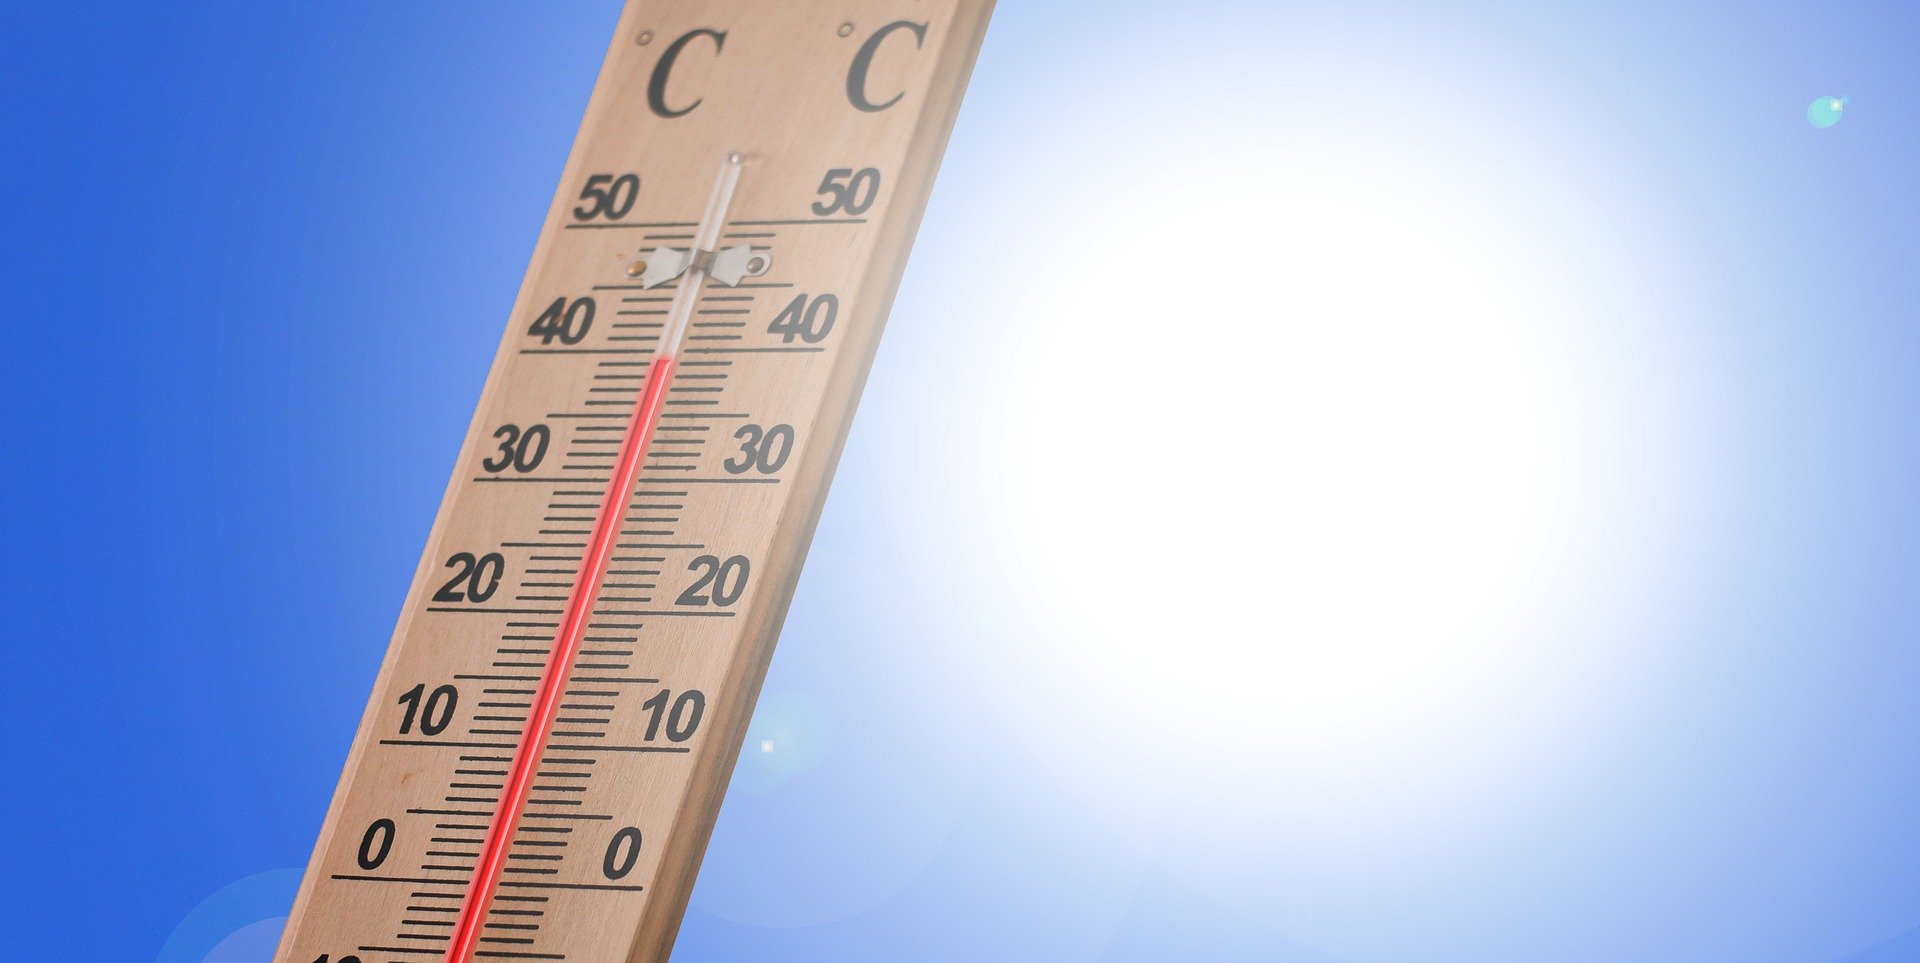 Le temperature medie aumentano più in Italia che nel resto del mondo - di Martina Pugno